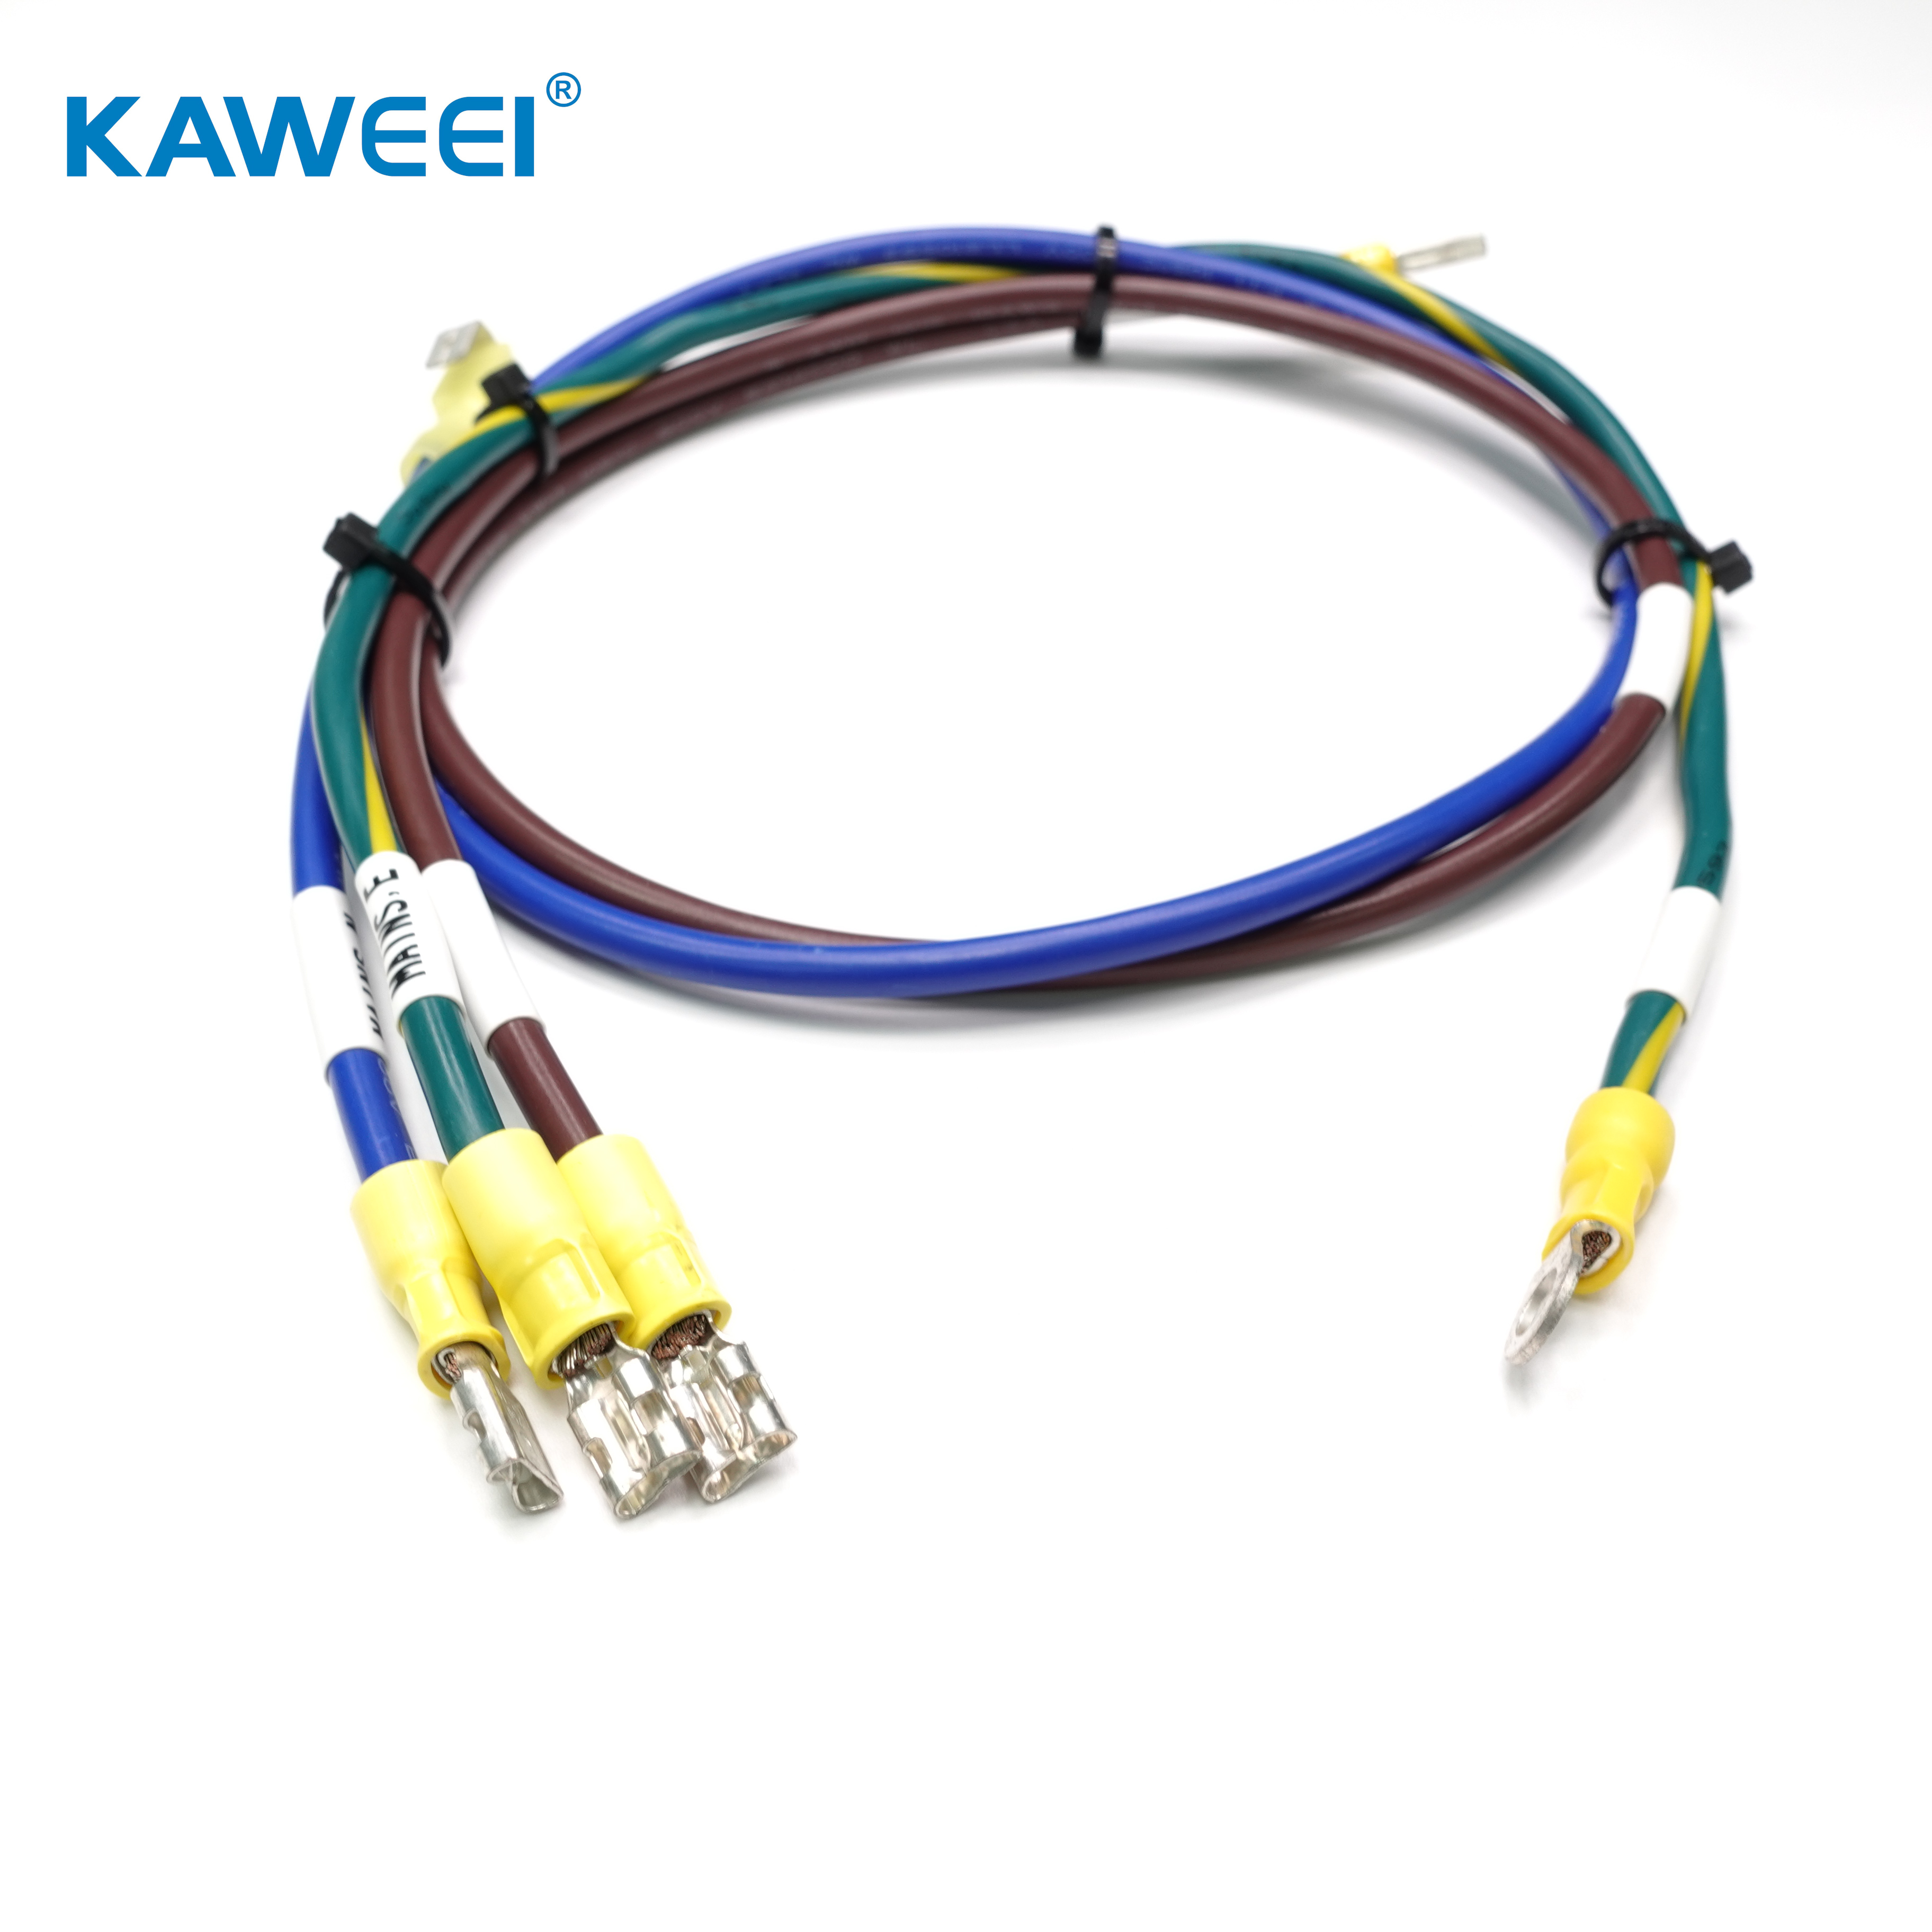 Power DC socket 3C kabel gearstalling Elektroanyske wire harnas